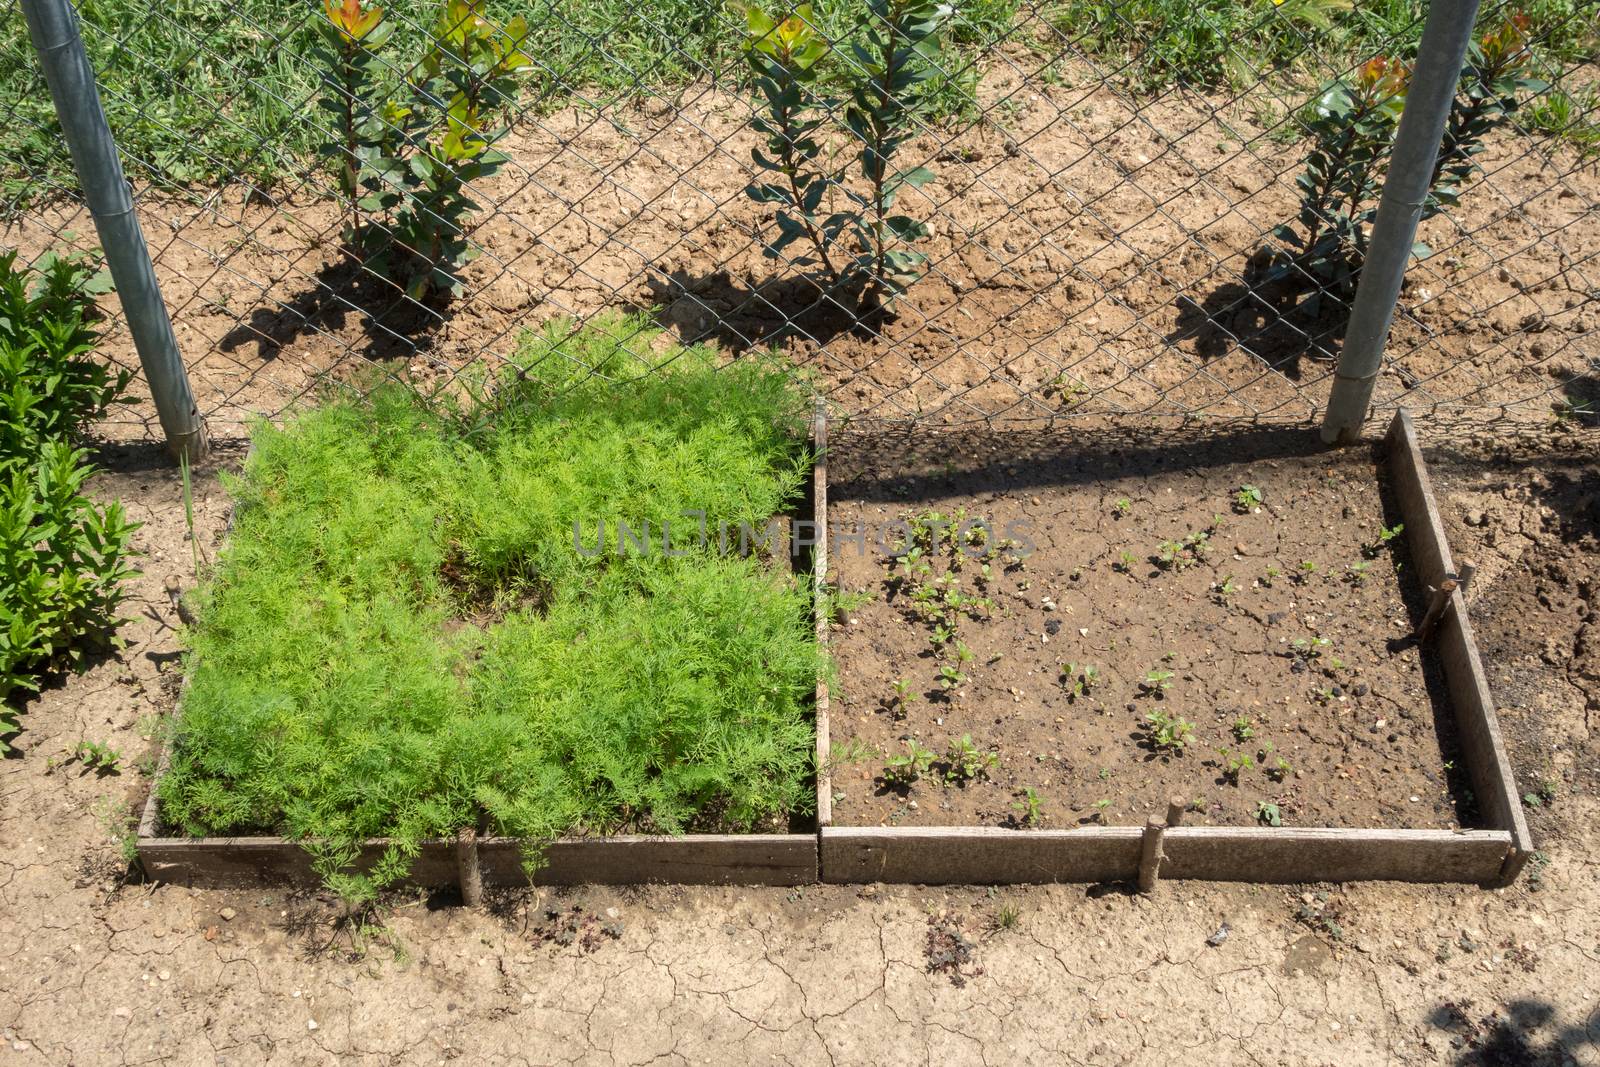 Herbs in yard. Raised-bed gardening